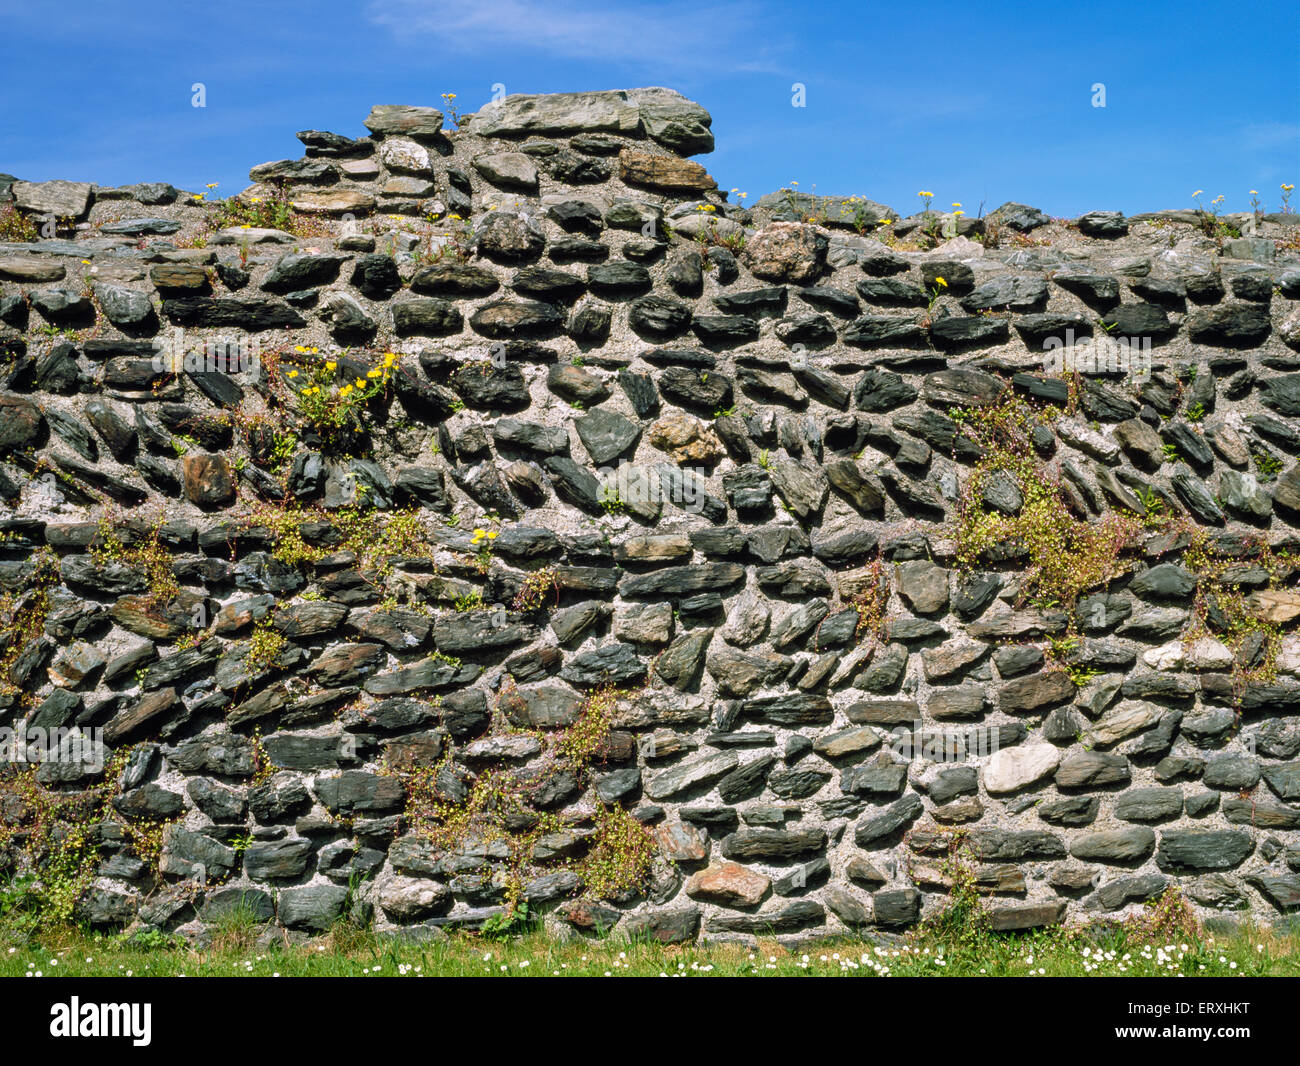 Dettaglio di piante che crescono nel nastrare & lavori in pietra angolare della parete nord del Caer Gybi romana base navale, Holyhead, Anglesey. Foto Stock